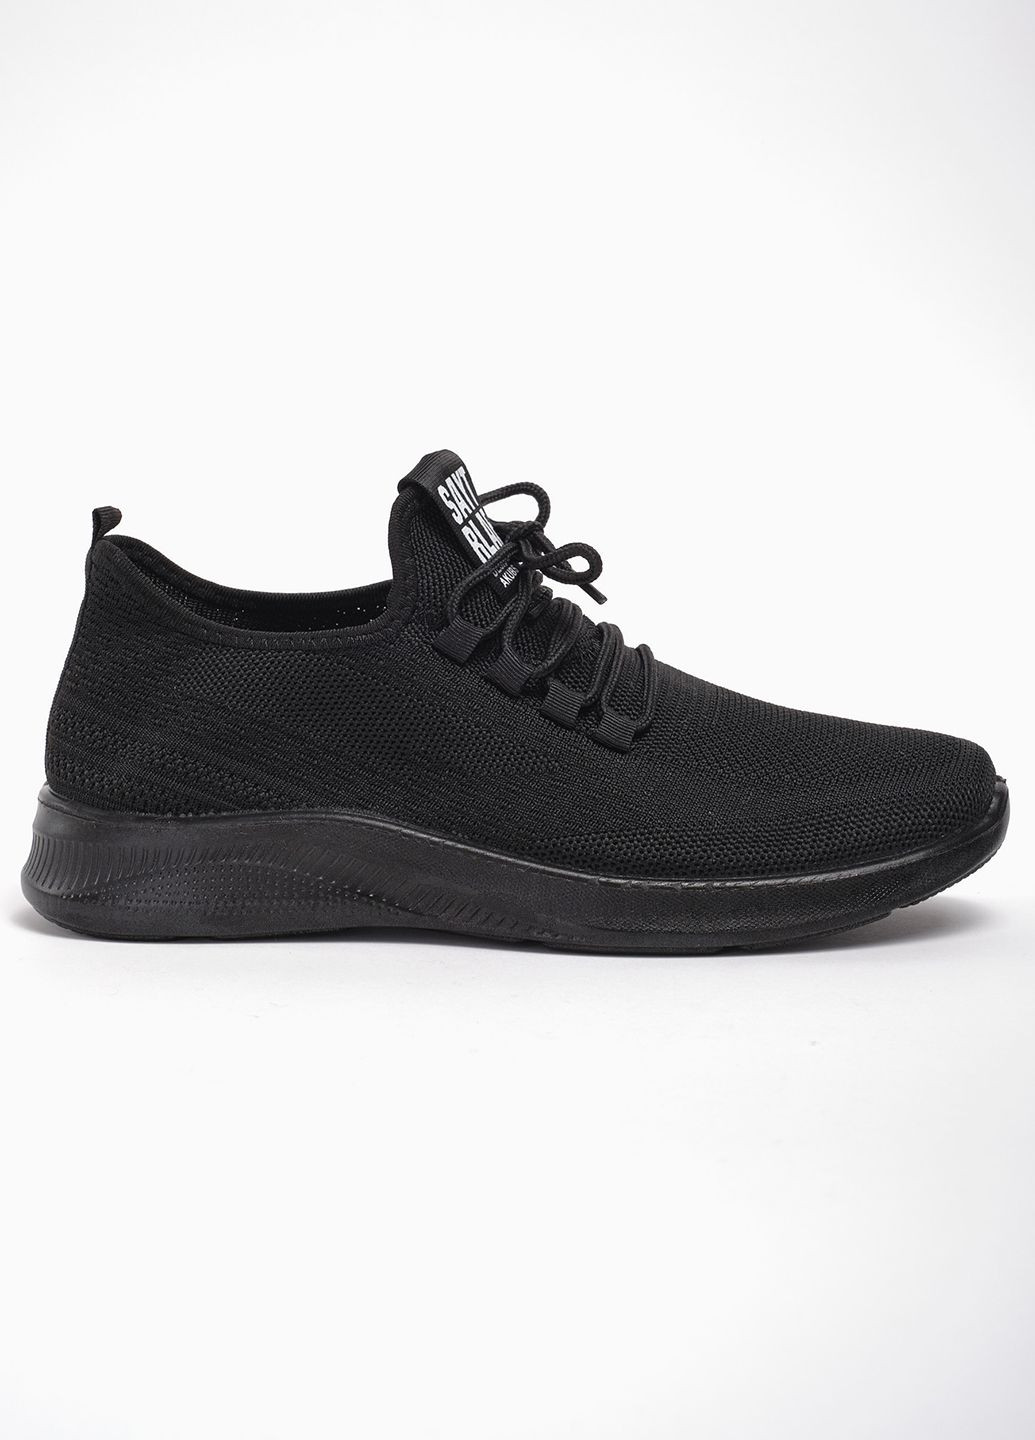 Черные летние кроссовки спорт m06-1 текстиль черный норма 342821 Power